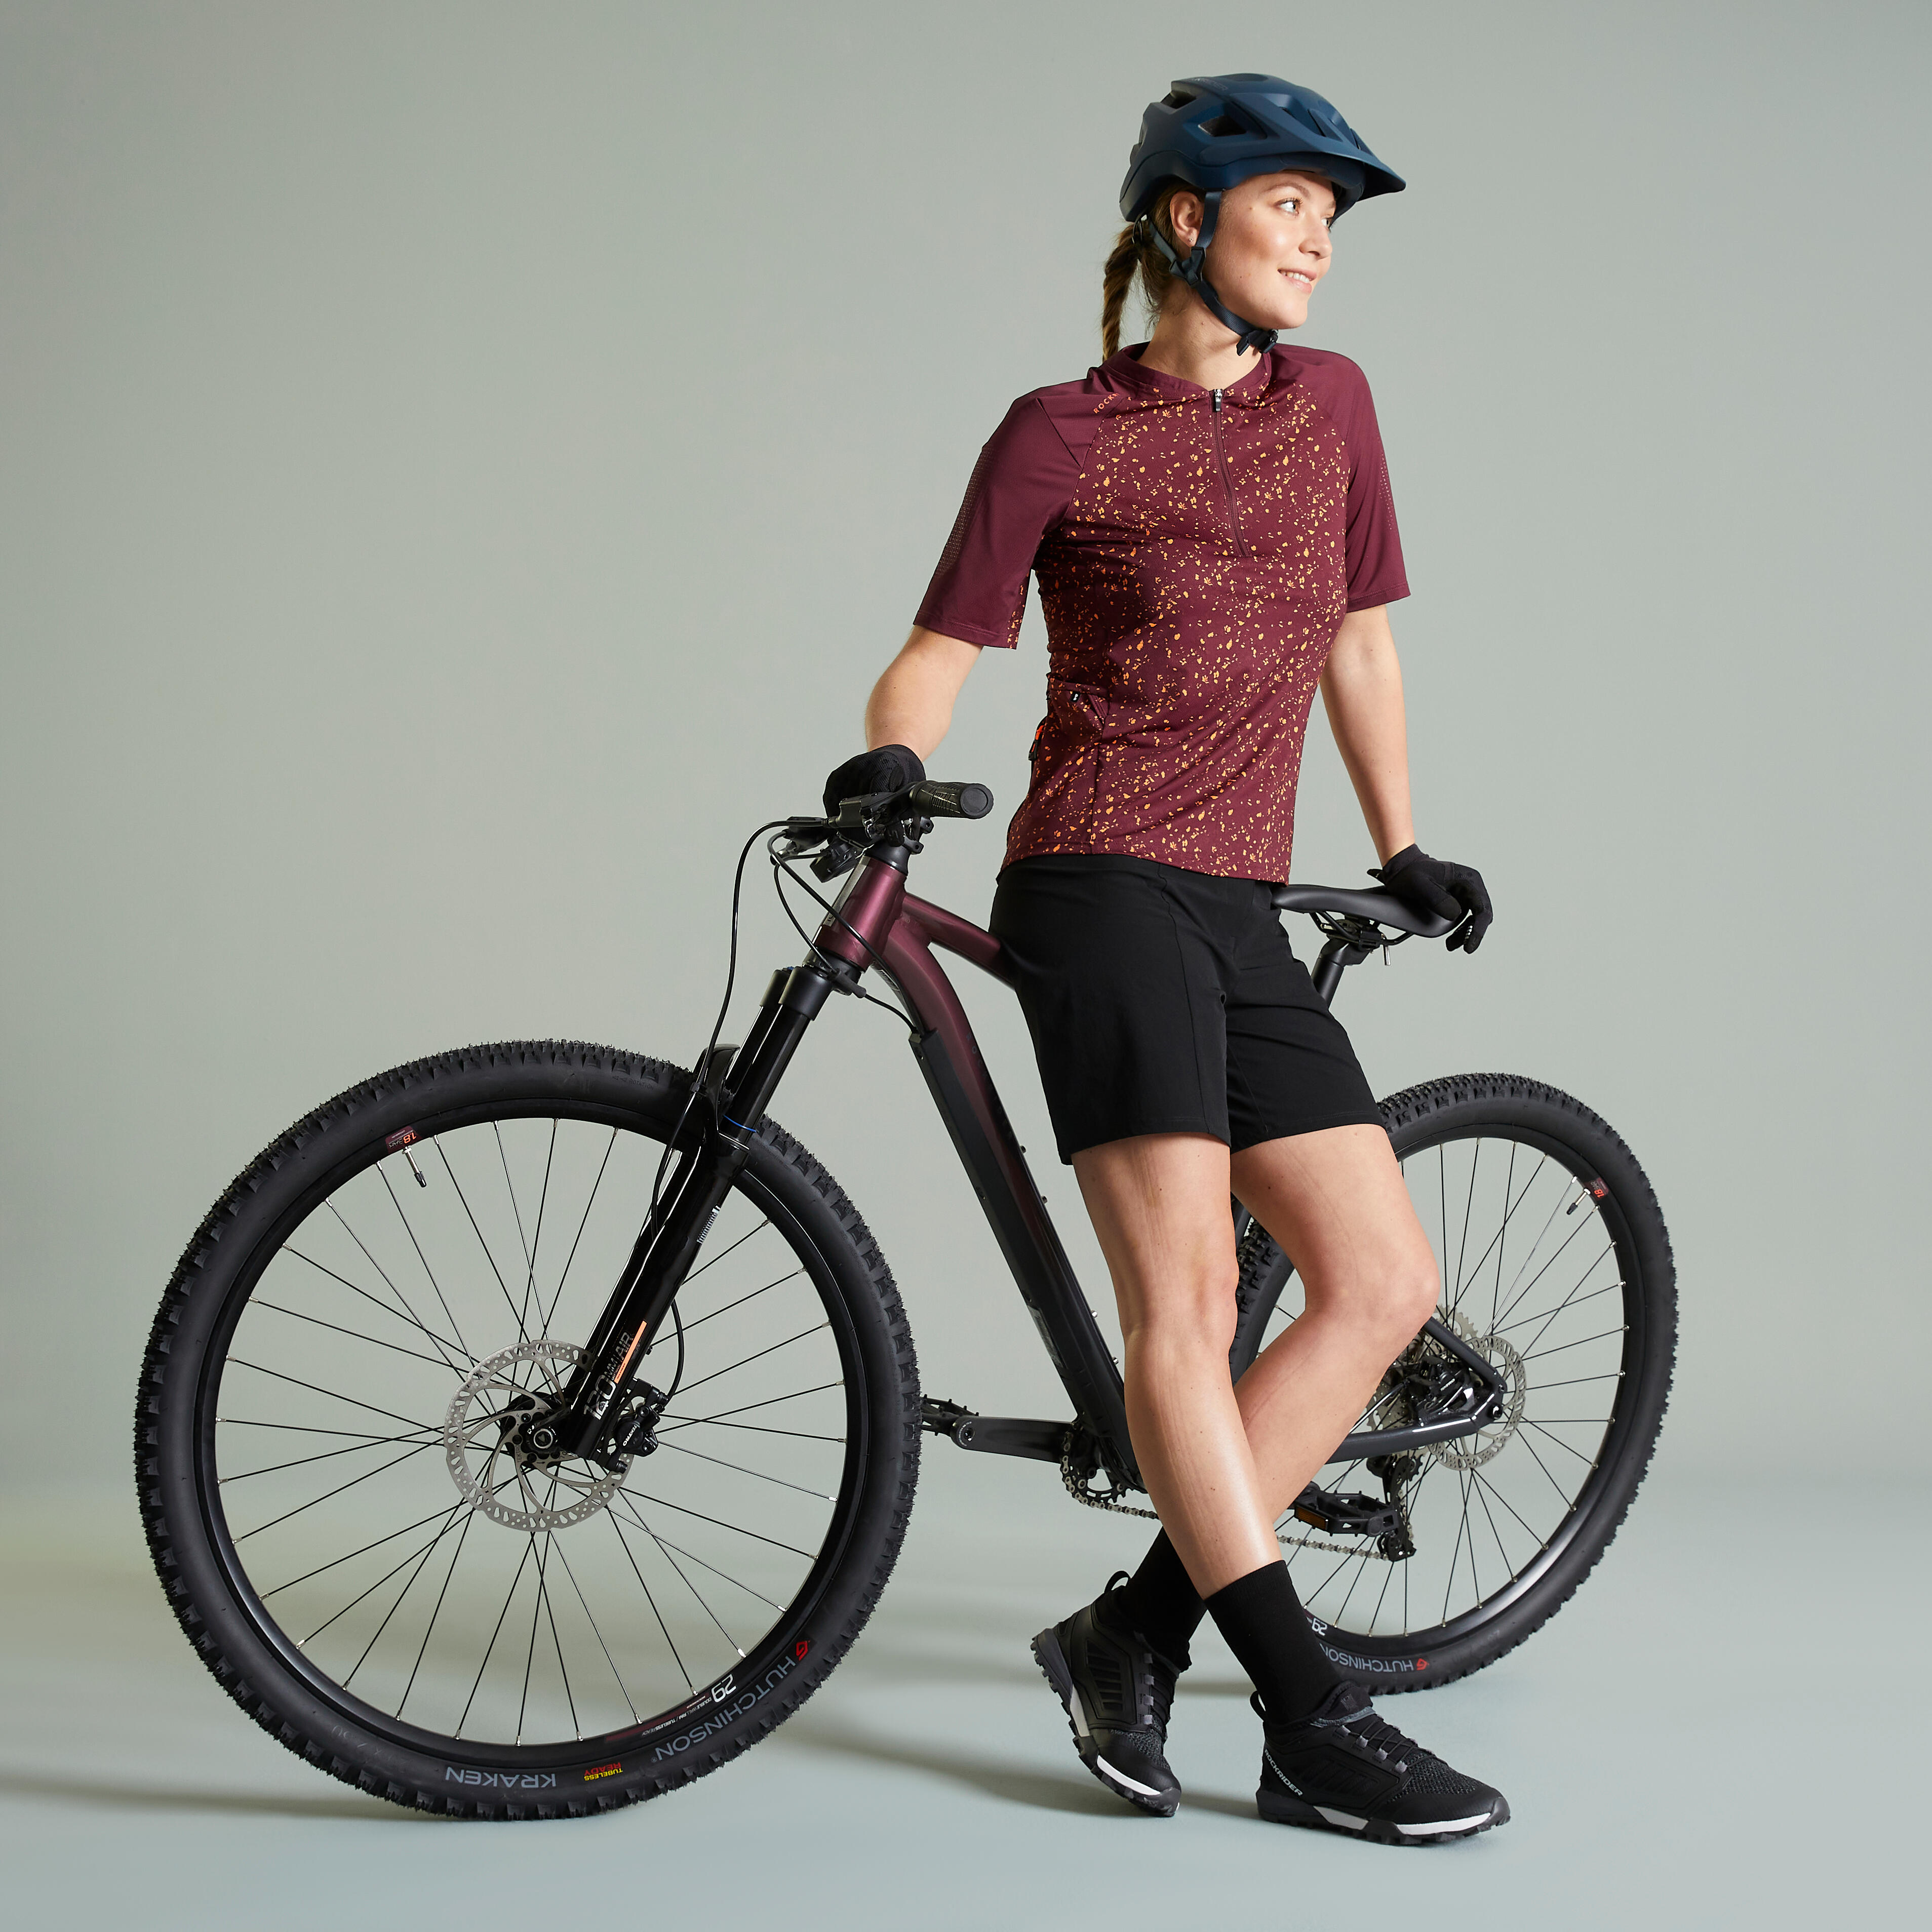 Women's Mountain Biking Jersey - EXPL 500 Burgundy - ROCKRIDER